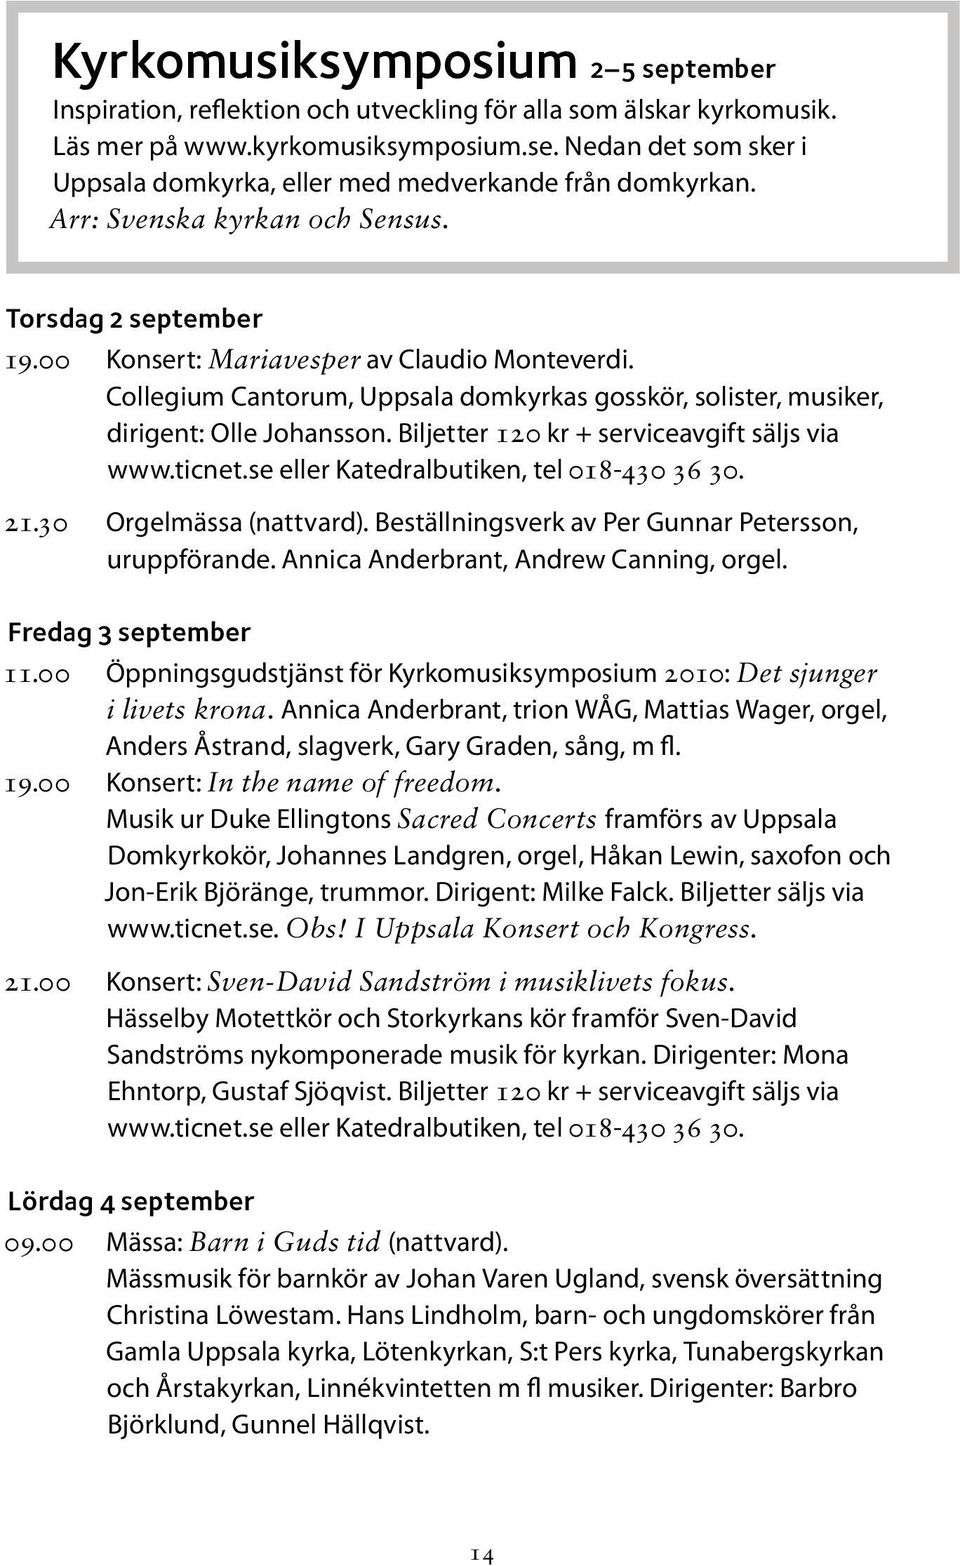 Biljetter 120 kr + serviceavgift säljs via www.ticnet.se eller Katedralbutiken, tel 018-430 36 30. 21.30 Orgelmässa (nattvard). Beställningsverk av Per Gunnar Petersson, uruppförande.